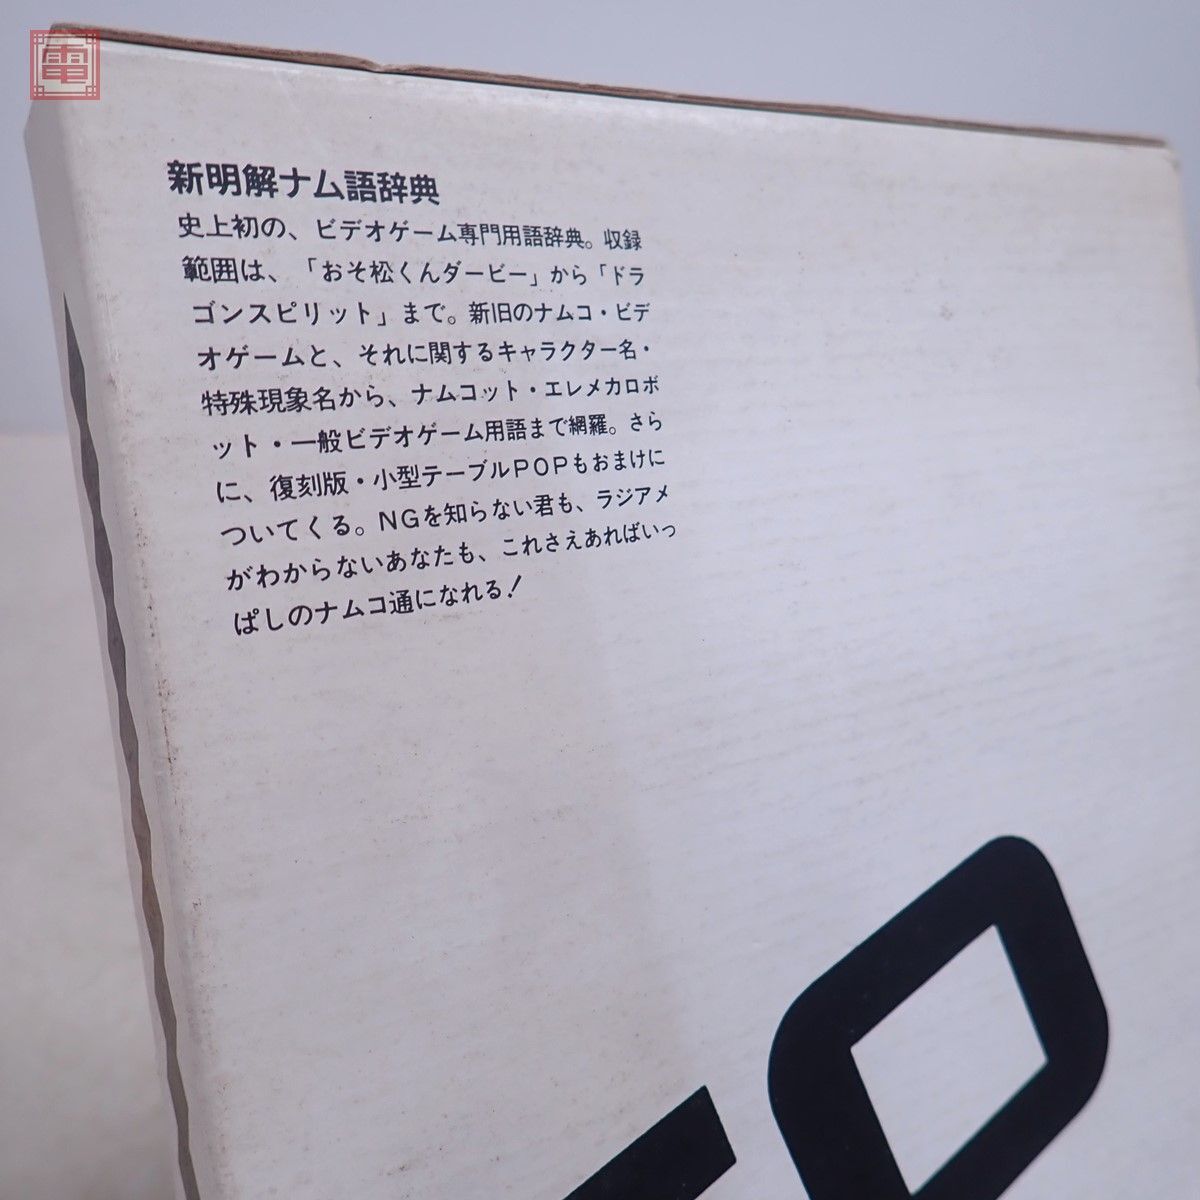  литература новый Akira .nam язык словарь роскошный ограниченая версия запад остров . добродетель Namco NAMCO 1987 год Showa 62 год первая версия Япония SoftBank [20